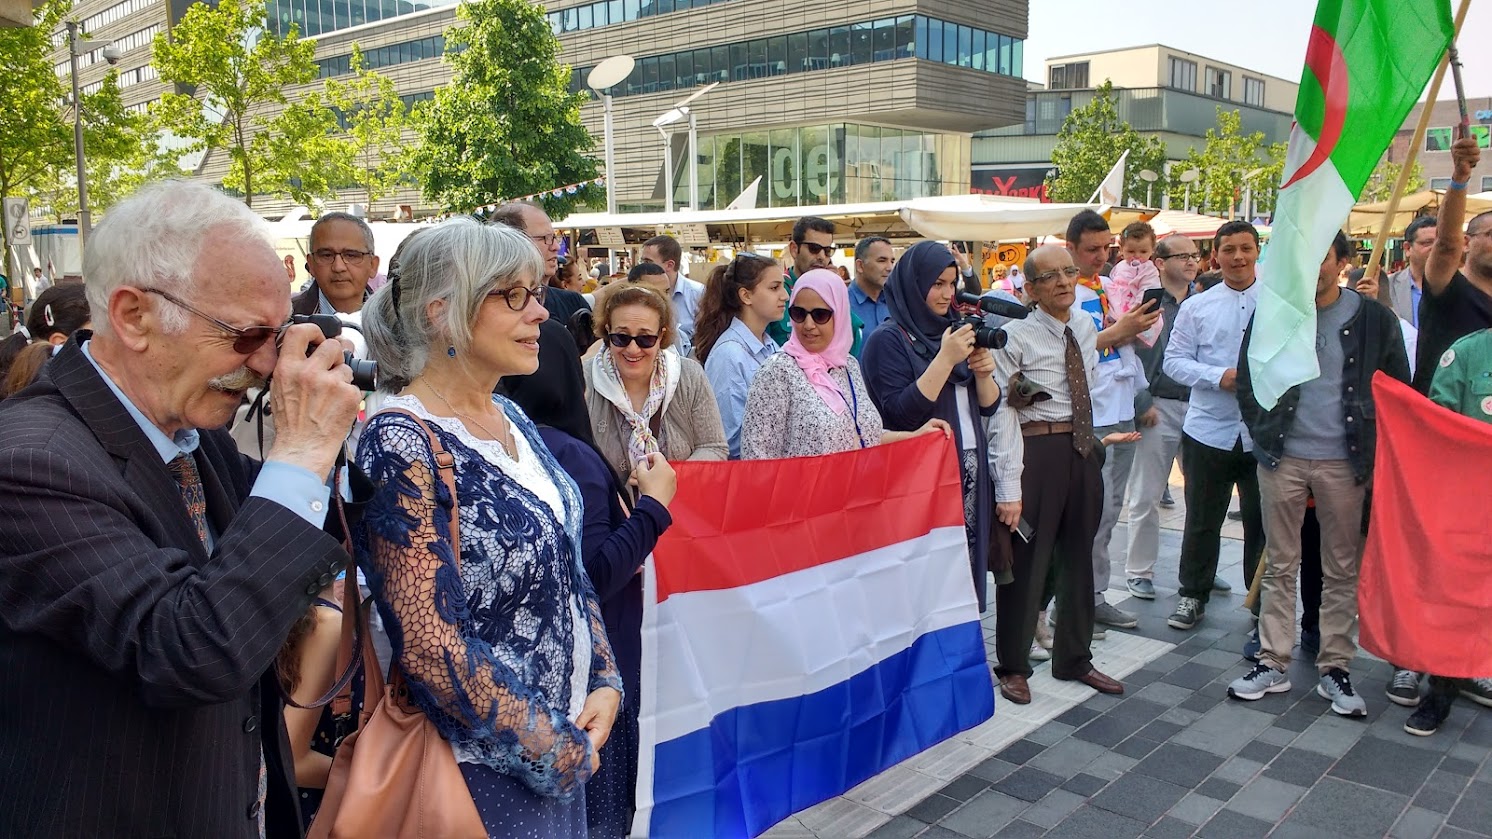 Het Utrechts Platform voor Levensbeschouwing en Religie - mensen die op straat lopen met Nederlandse vlag